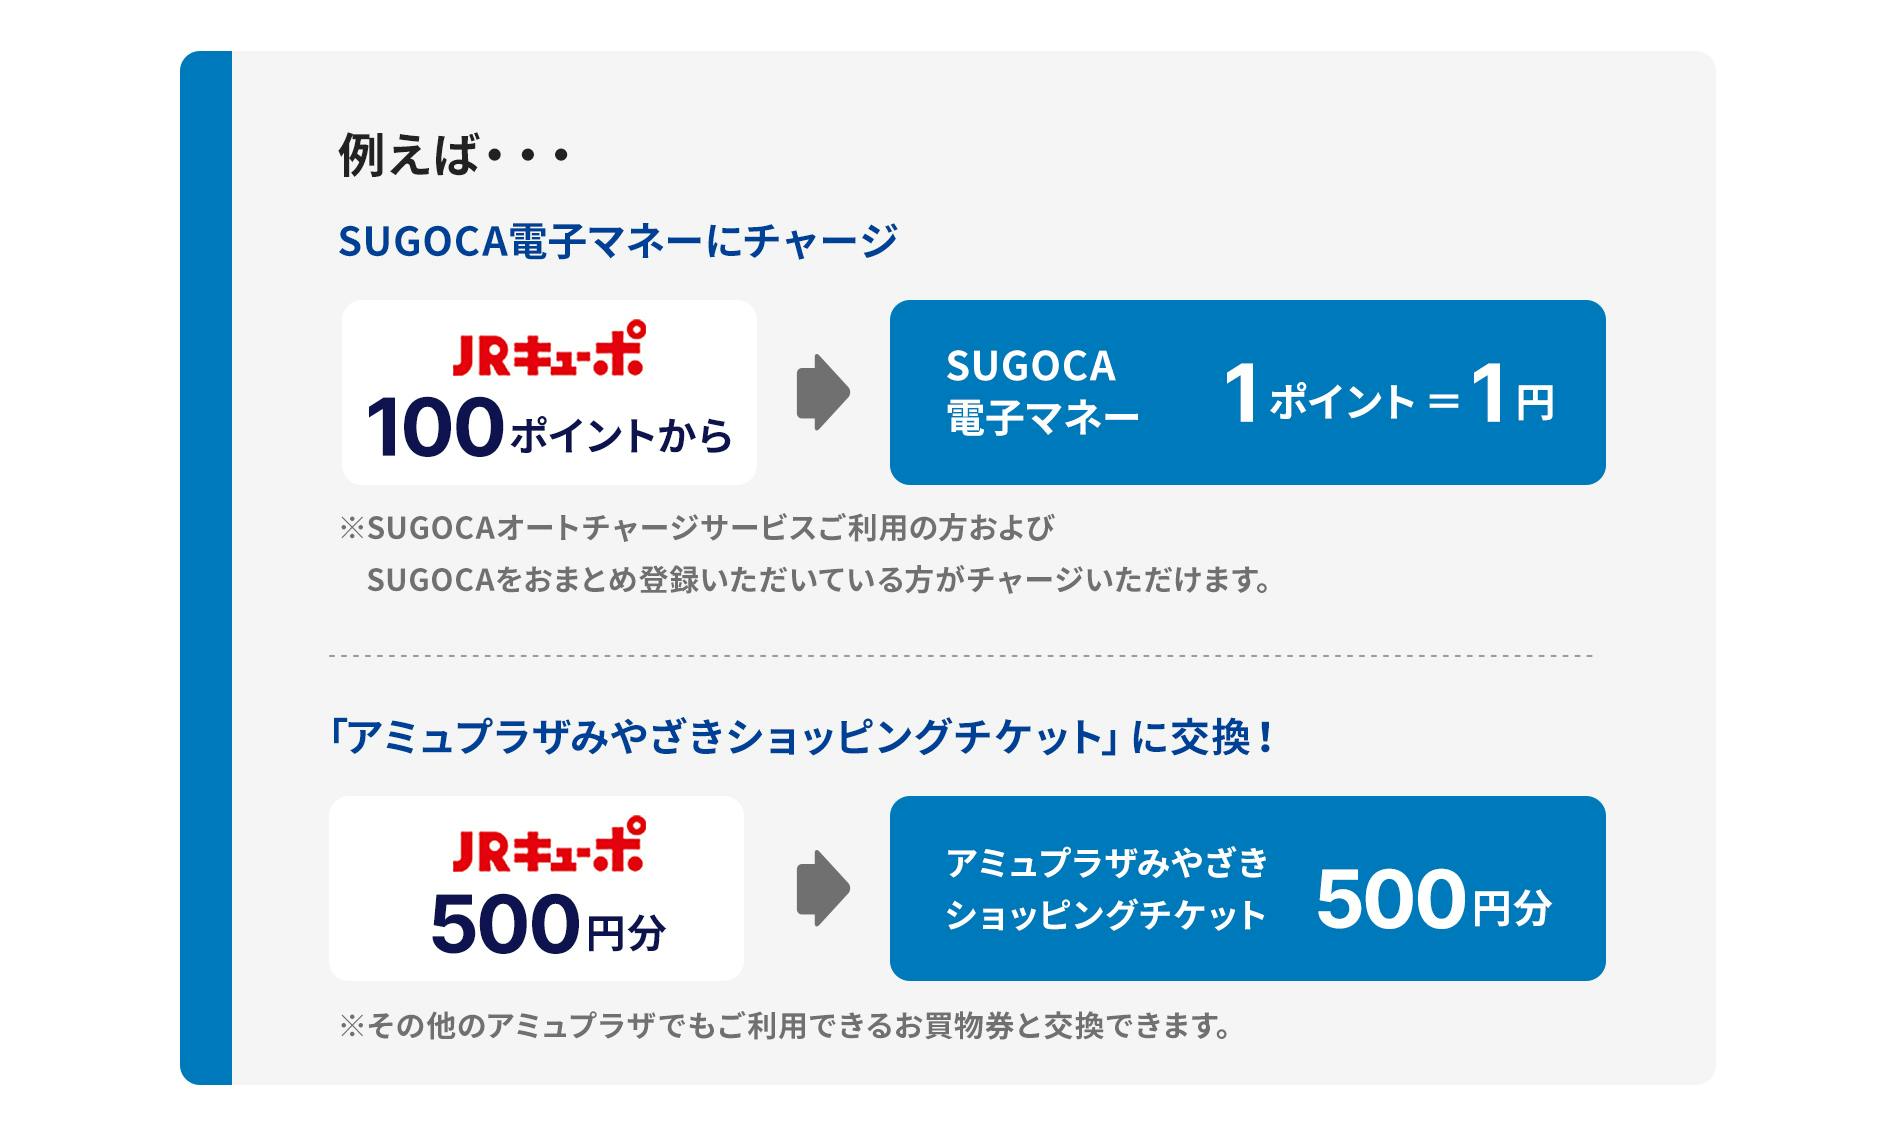 例えば…　SUGOCA電子マネーにチャージの場合、JRキューポ100ポイントからでSUGOCA電子マネー1ポイント＝1円※SUGOCAオートチャージサービスご利用の方のみ可能です。　「アミュプラザみやざきショッピングチケット」に交換する場合、JRキューポ500円分がアミュプラザみやざきショッピングチケット500円分※その他のアミュプラザでもご利用できるお買物券と交換できます。